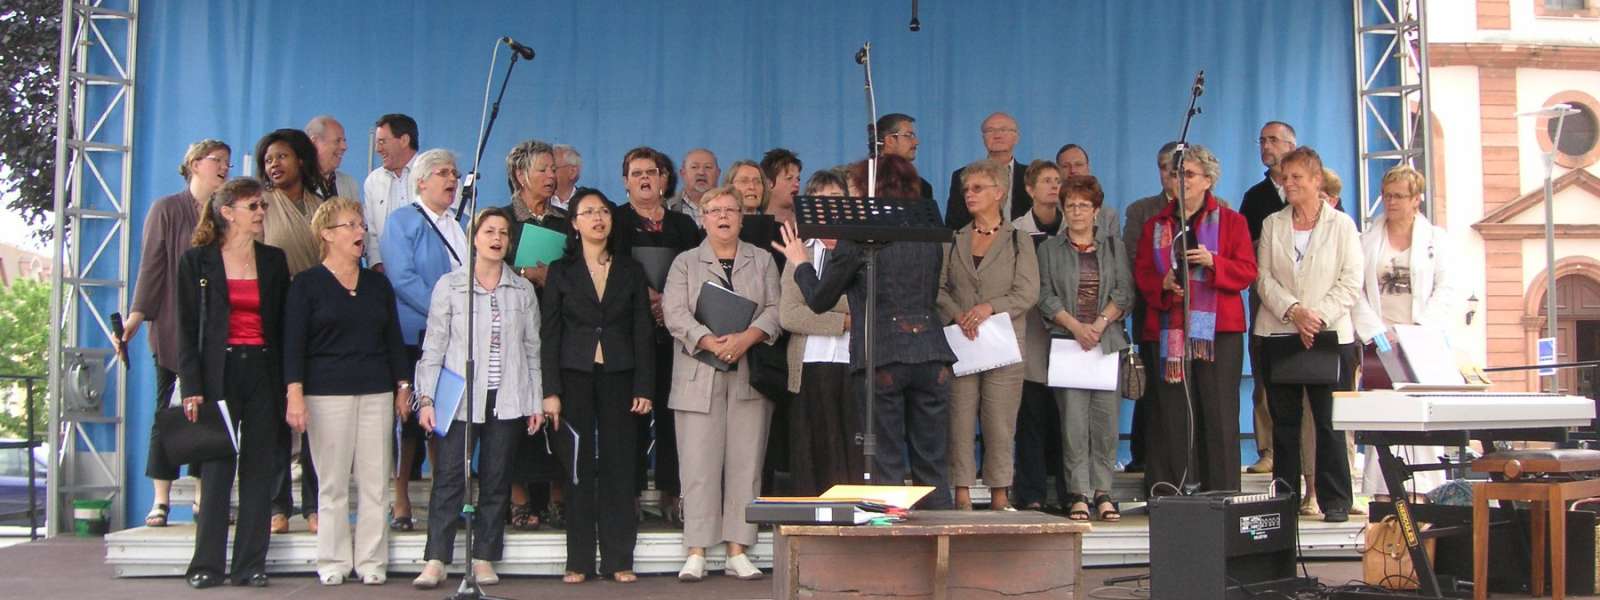 Animation de la chorale oecuménique lors de la Fête de la musique à Niederbronn-les-Bains